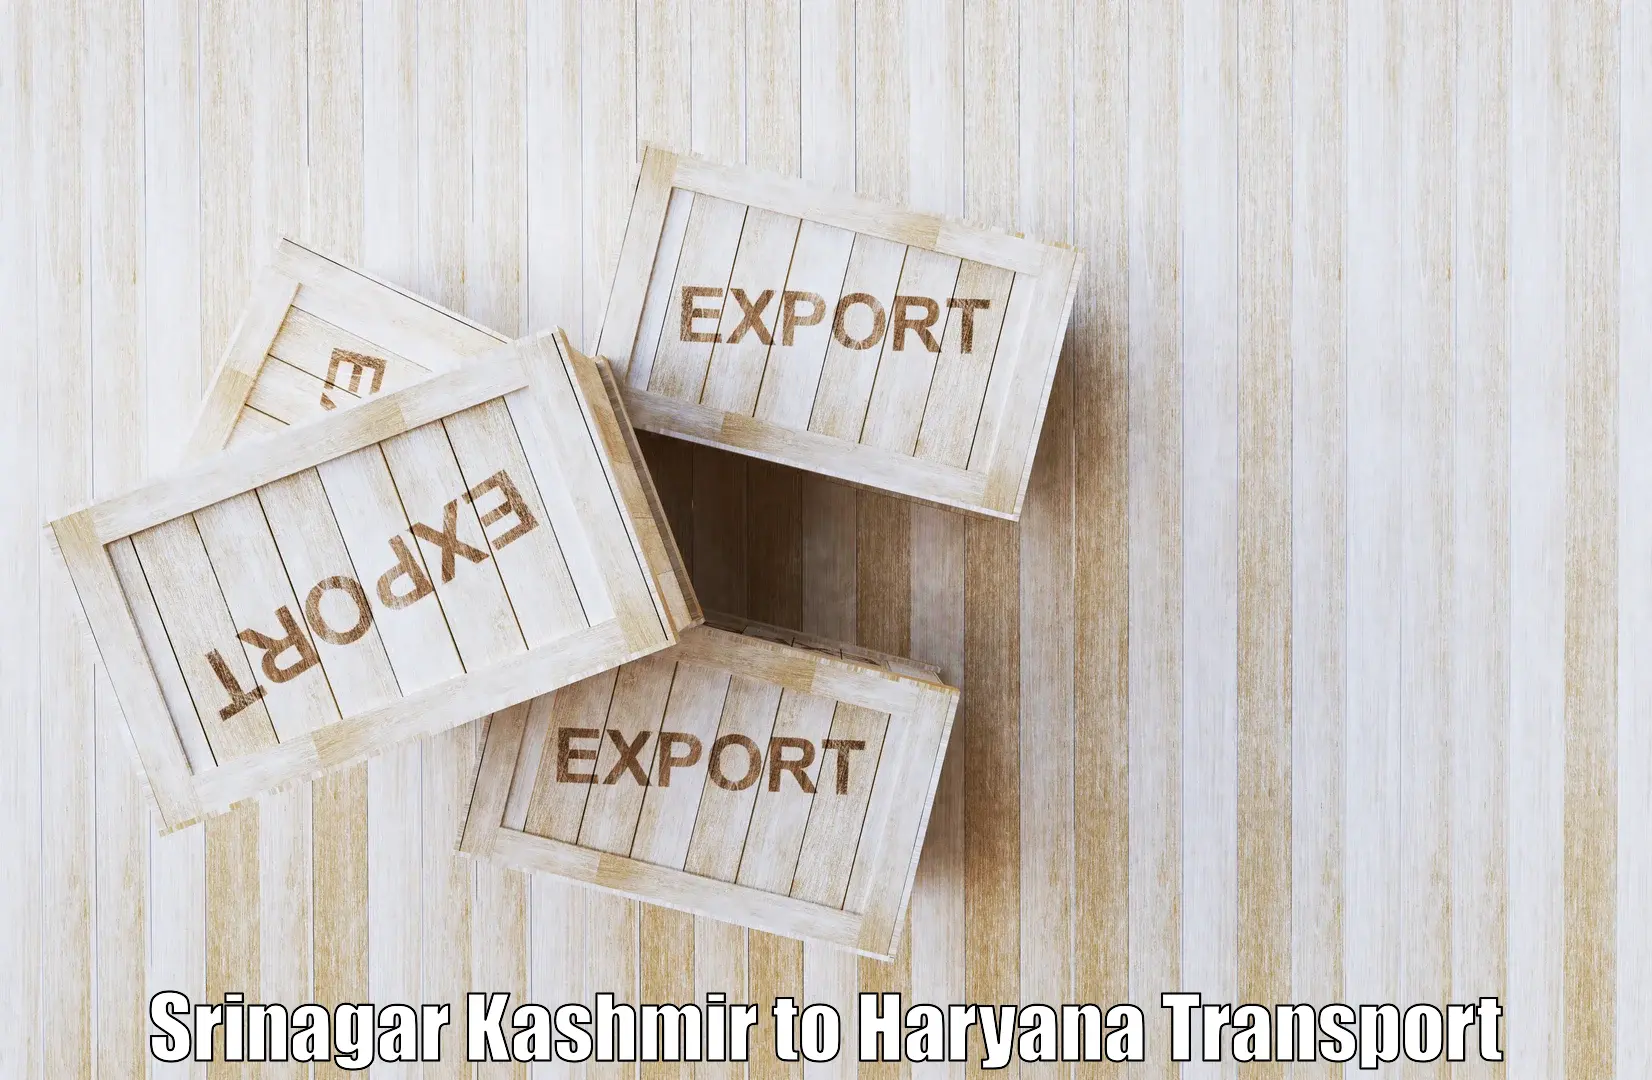 Bike shipping service Srinagar Kashmir to Haryana